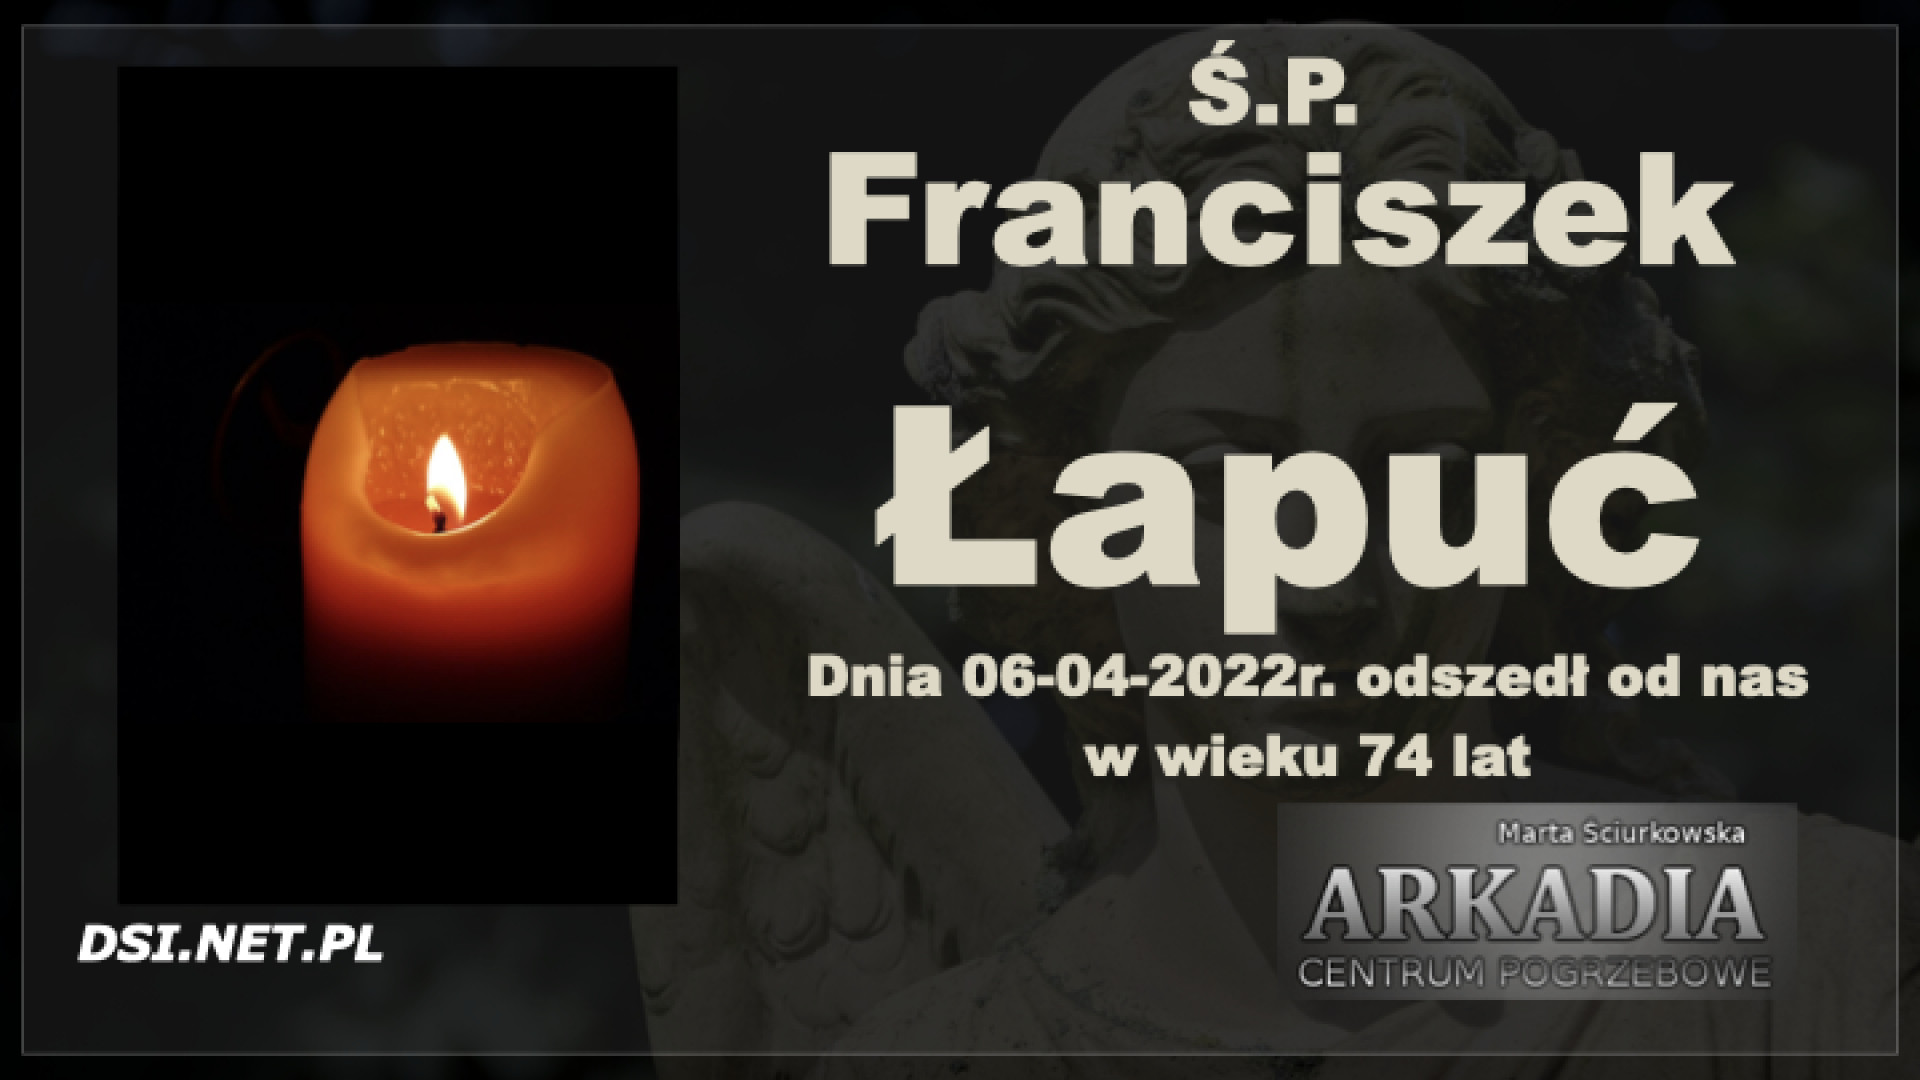 Ś.P. Franciszek Łapuć